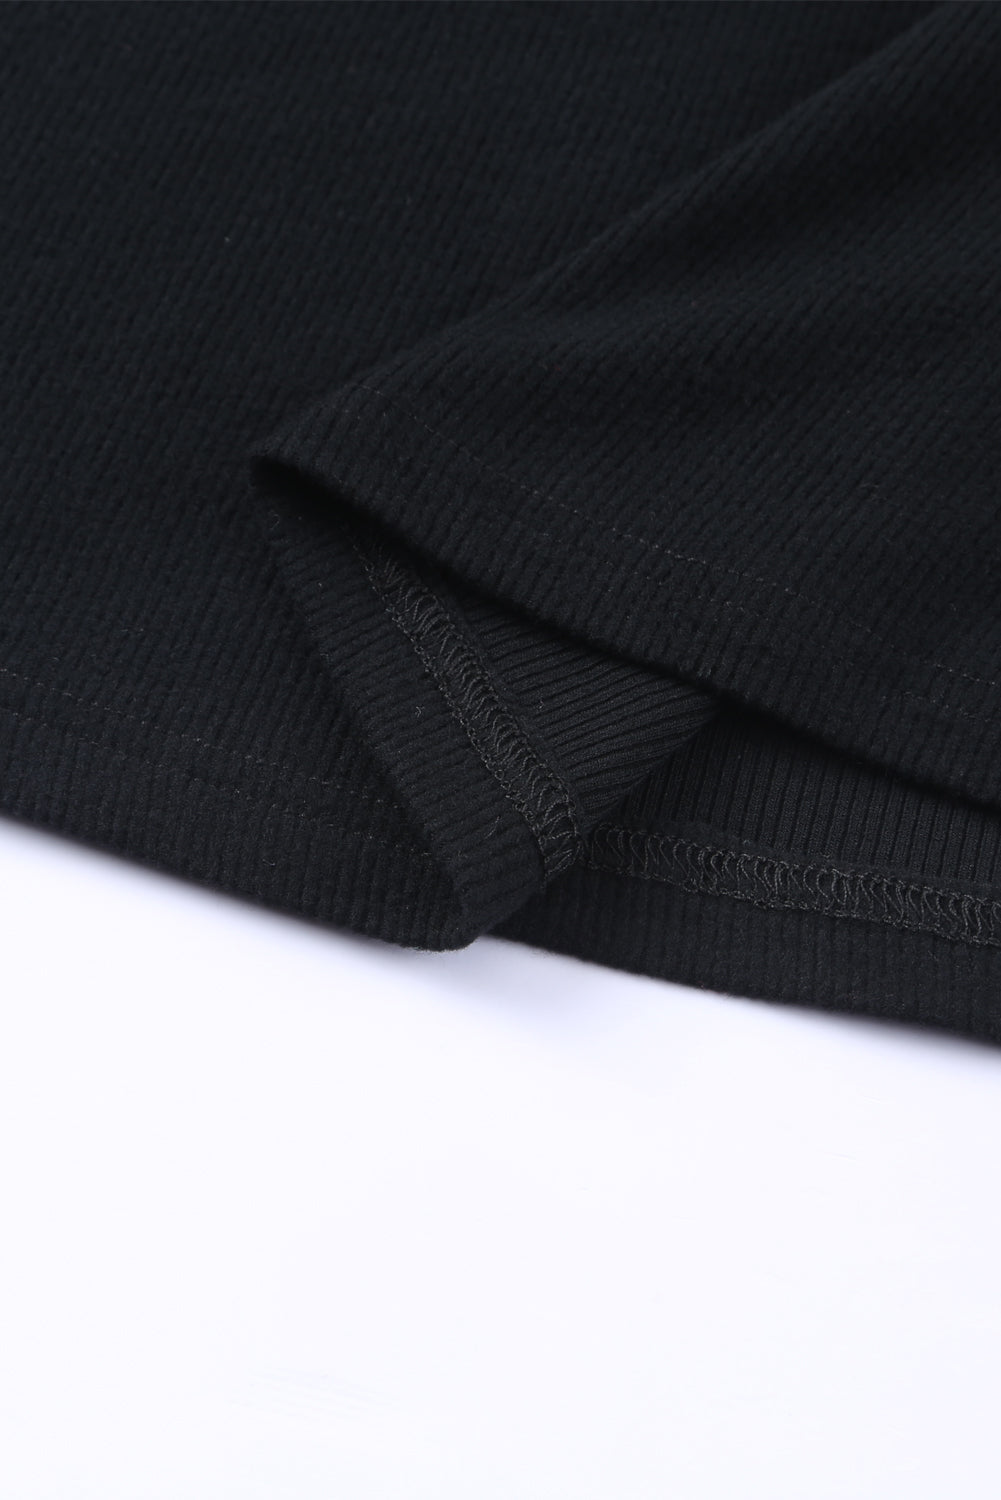 Crna čipkana majica dugih rukava s V izrezom